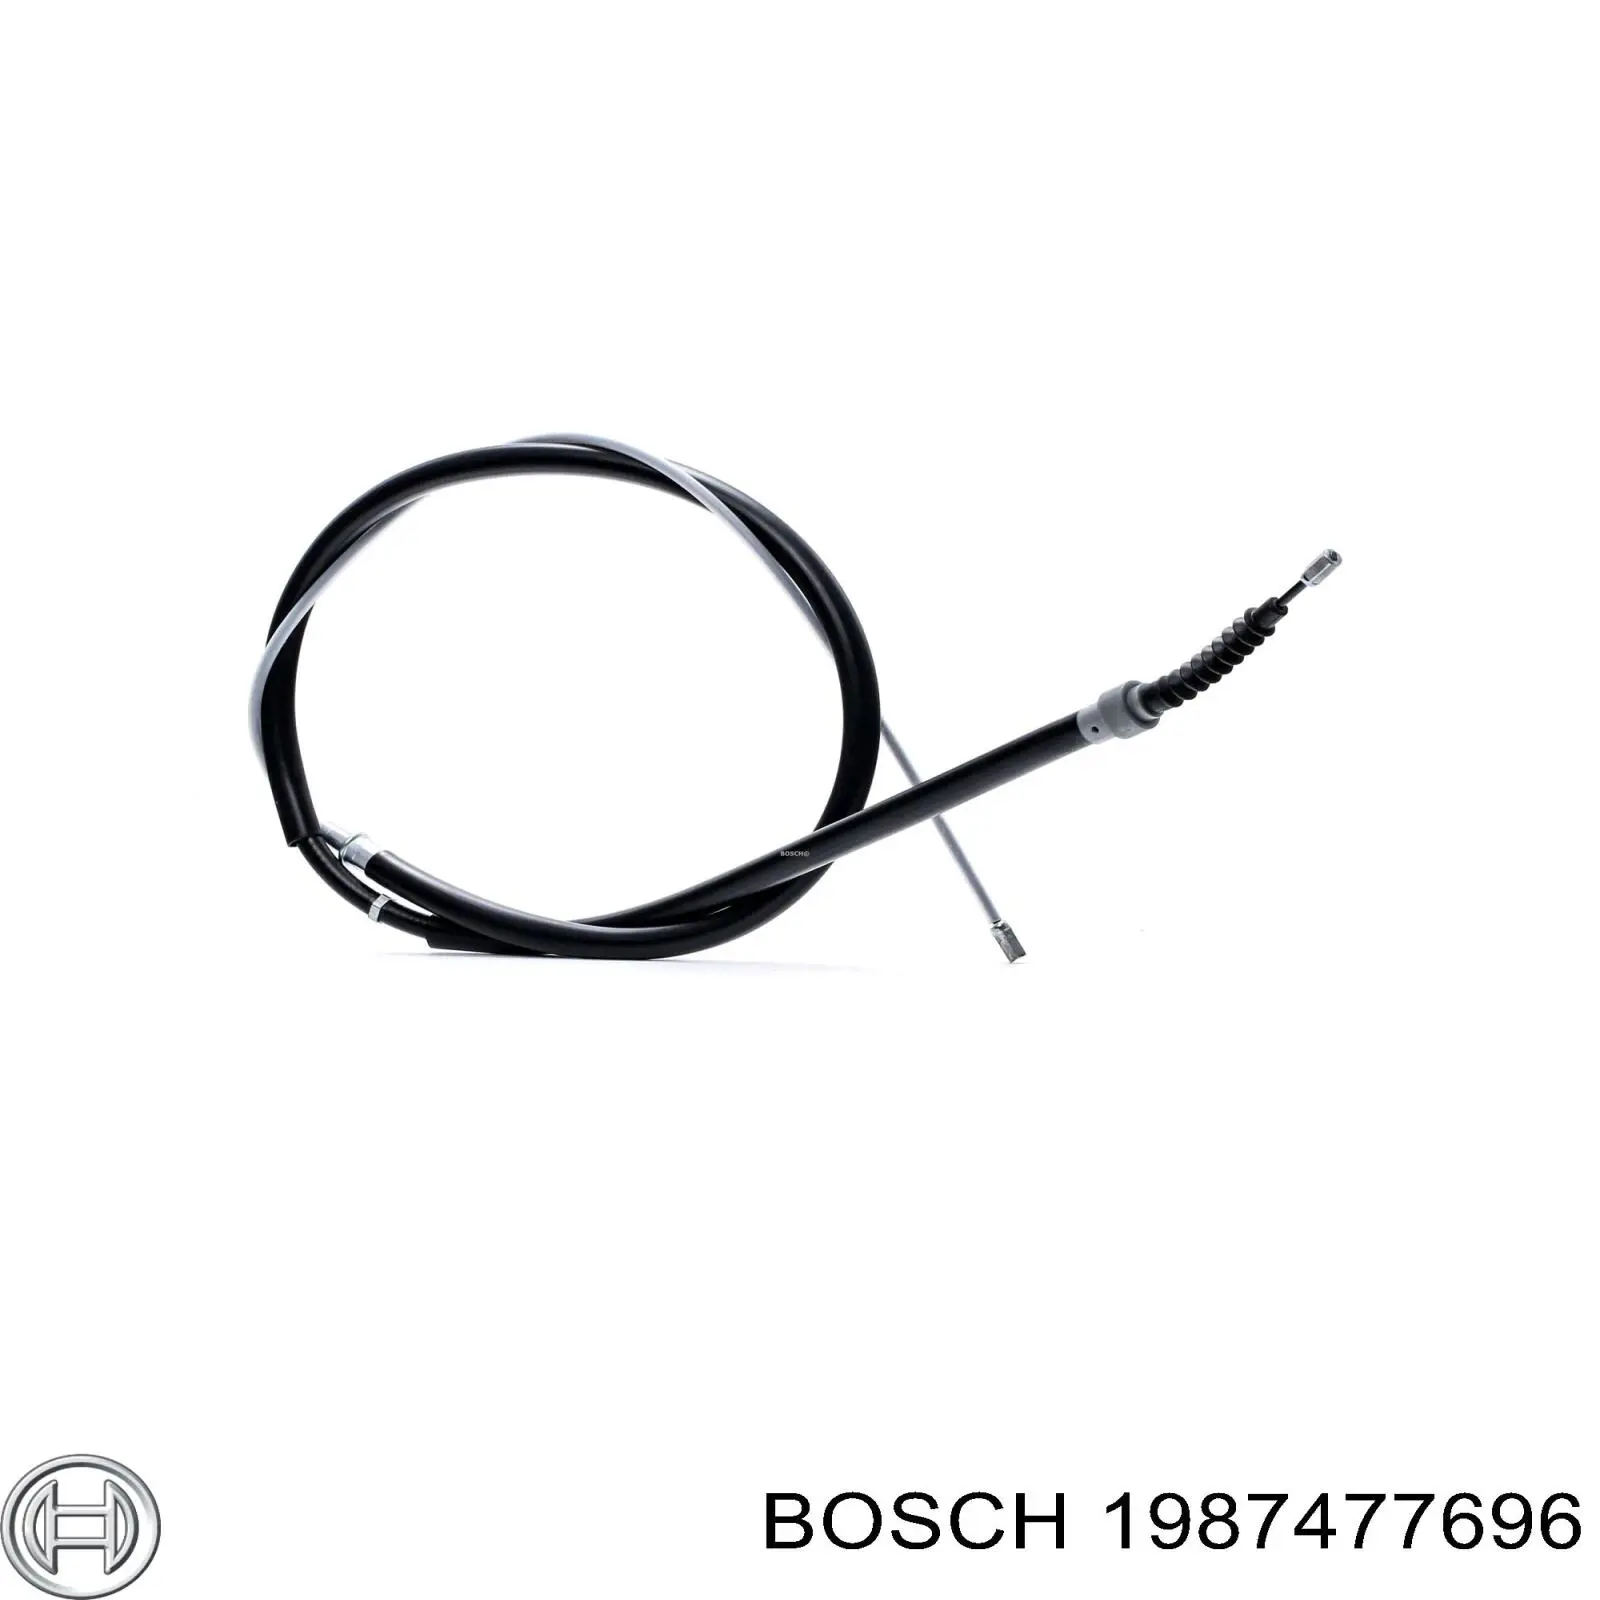 1987477696 Bosch cable de freno de mano trasero derecho/izquierdo